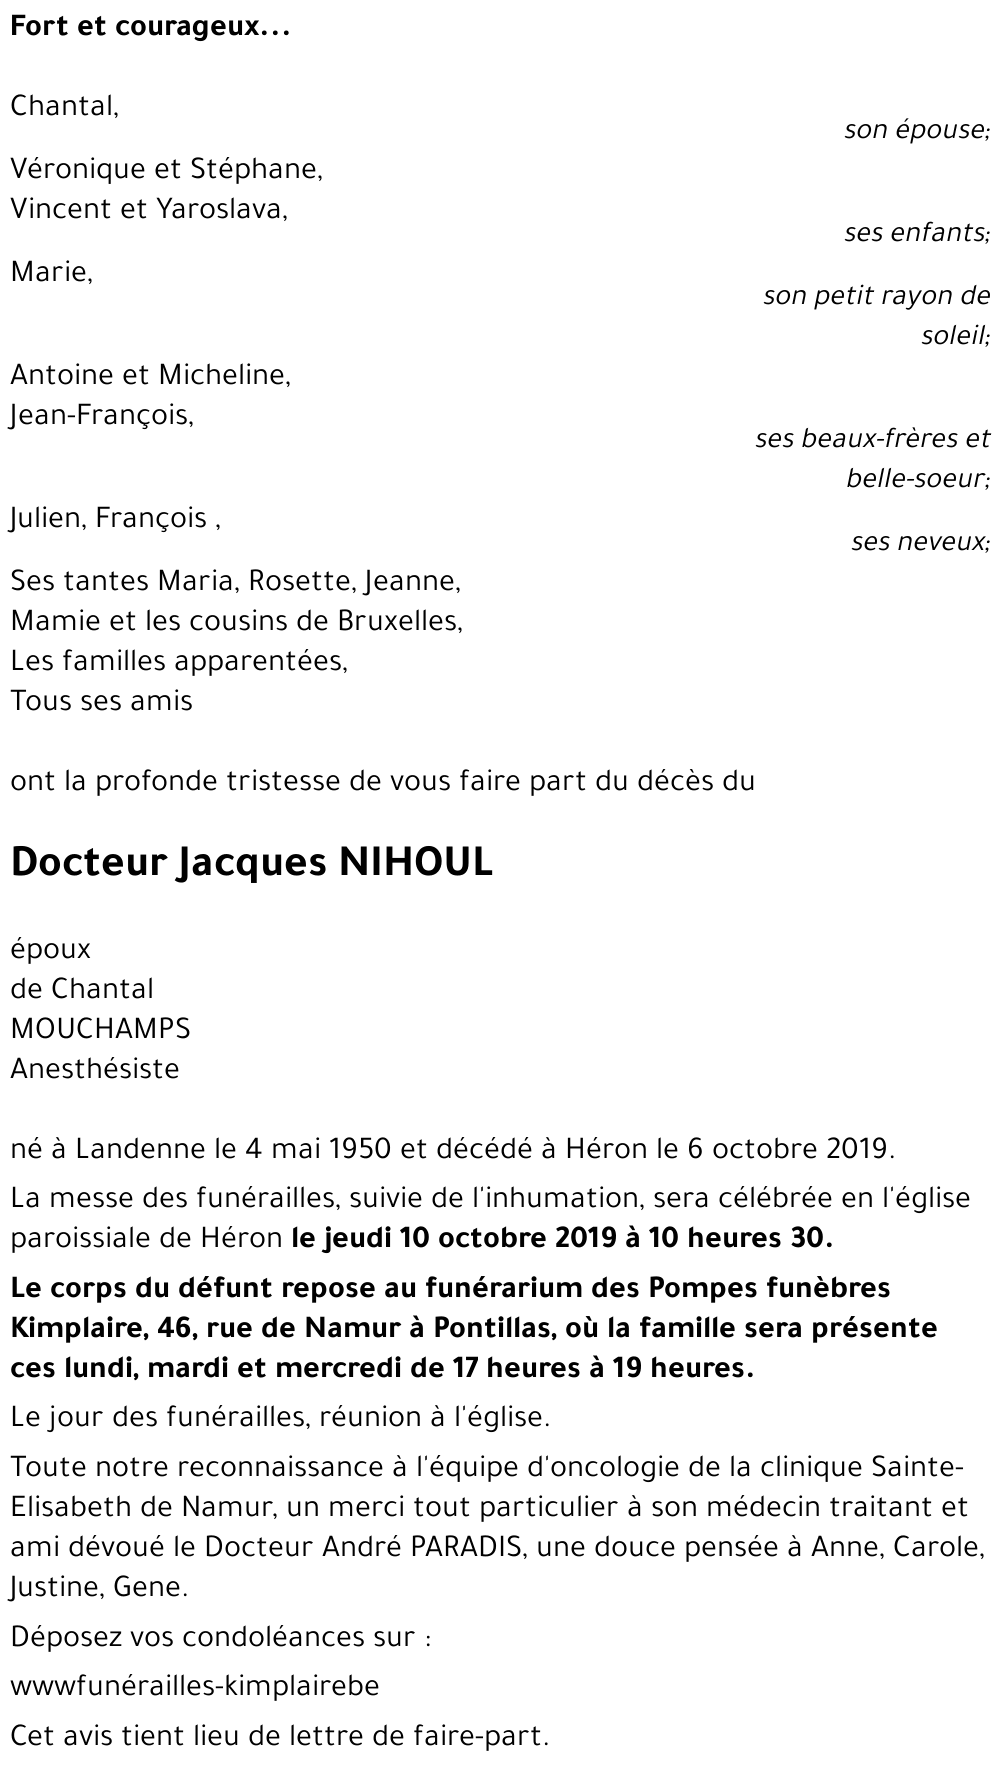 Jacques NIHOUL († 06/10/2019) | Inmemoriam